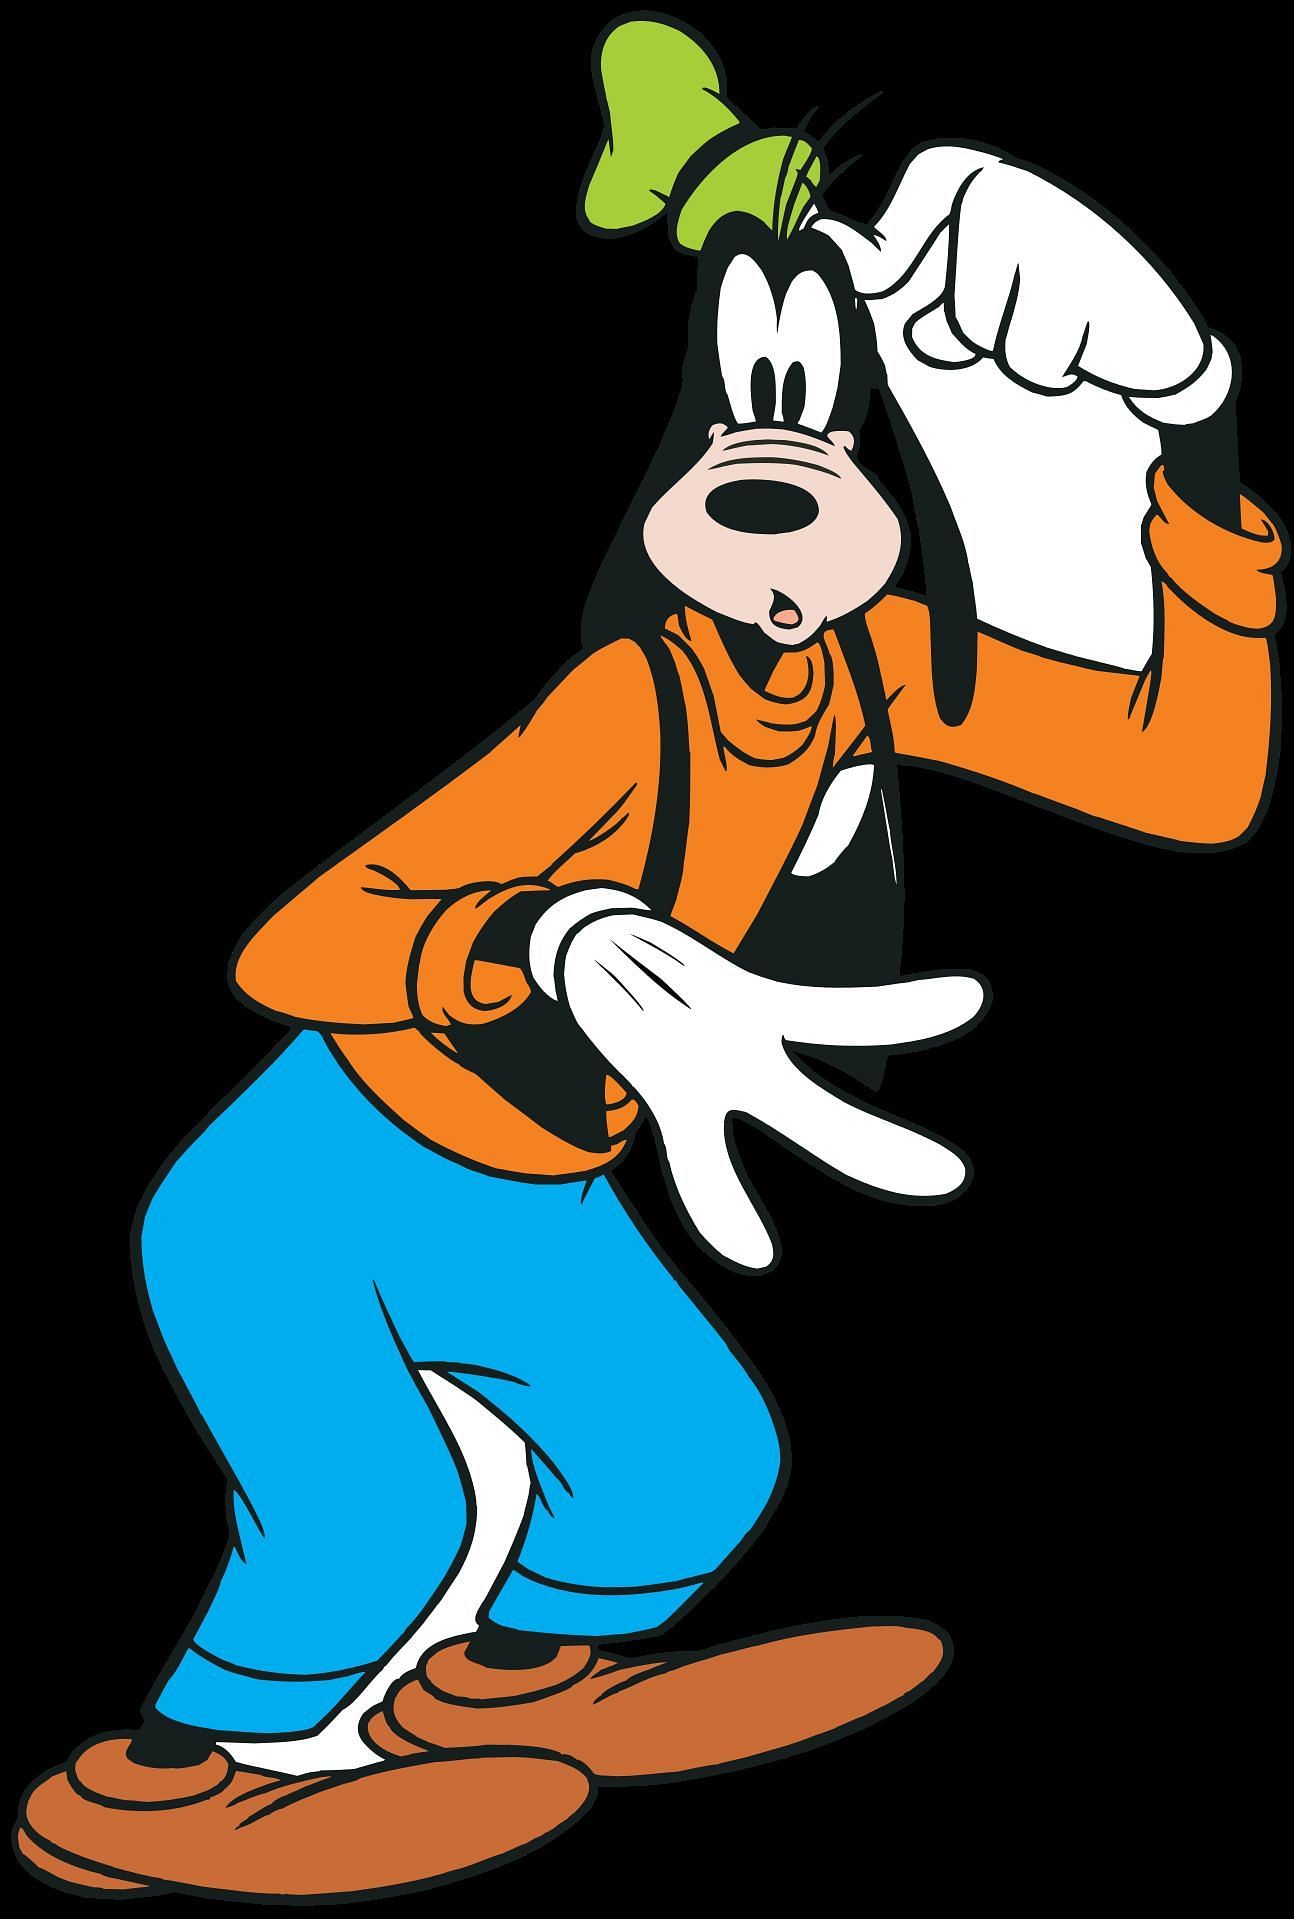 Disney&#039;s Goofy (Image via disney.fandom.com)